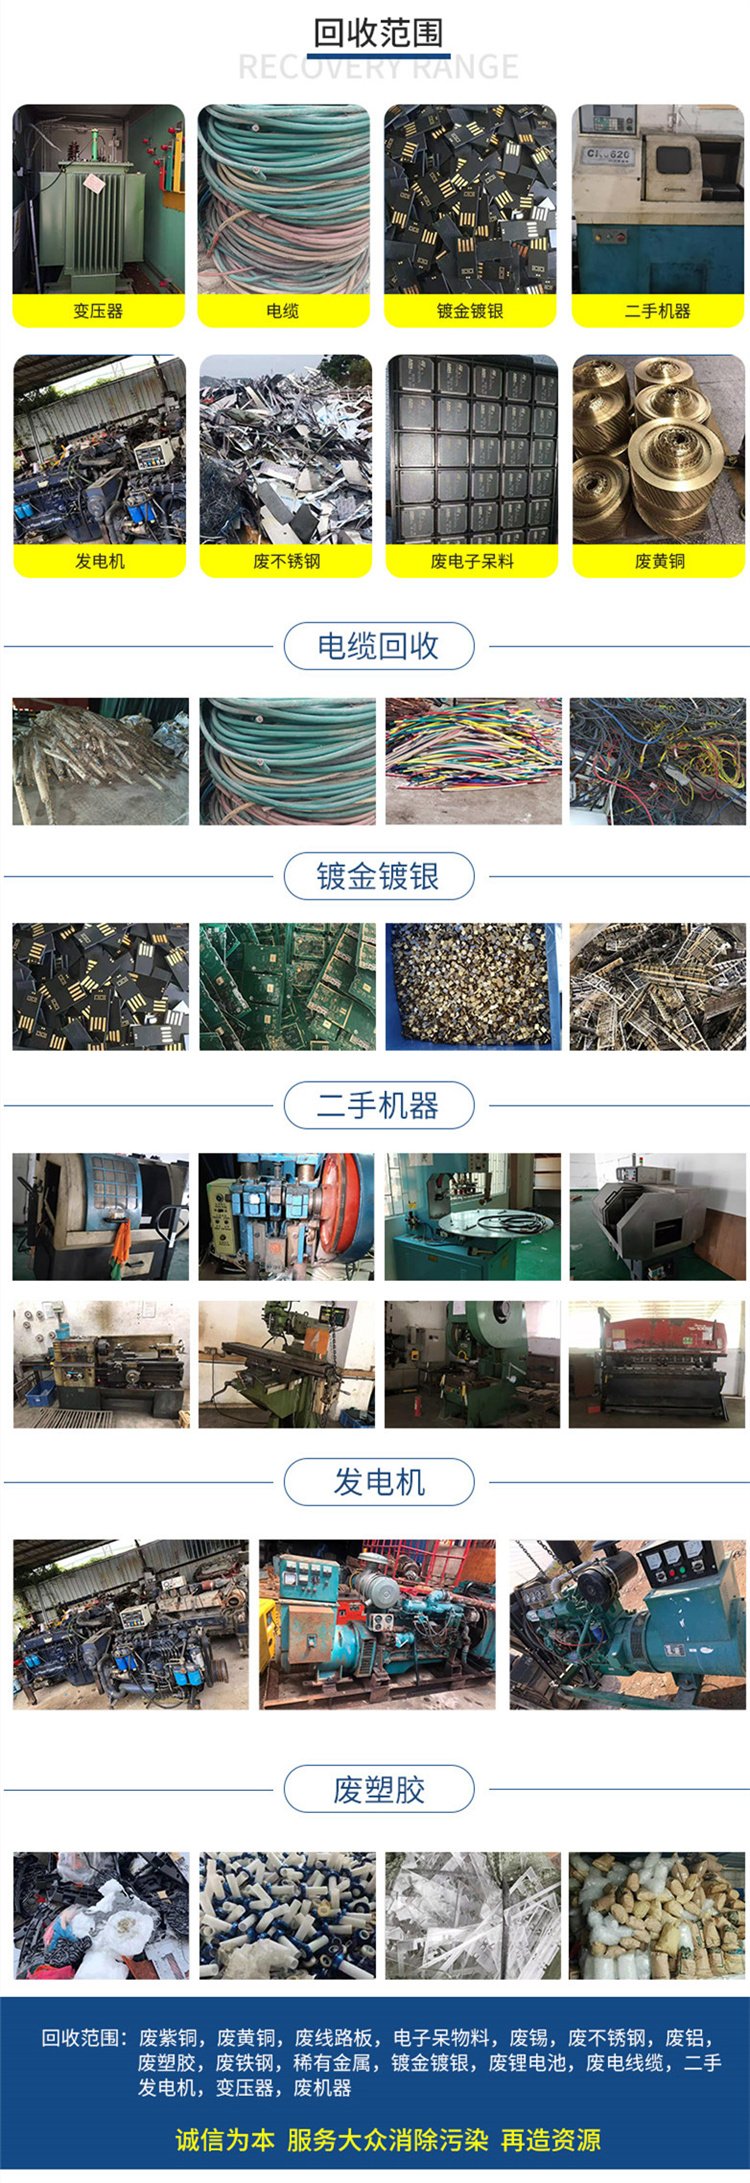 福田区 观澜 凤岗 常年回收二手设备 闲置机械设备回收 鸿隆公司估价